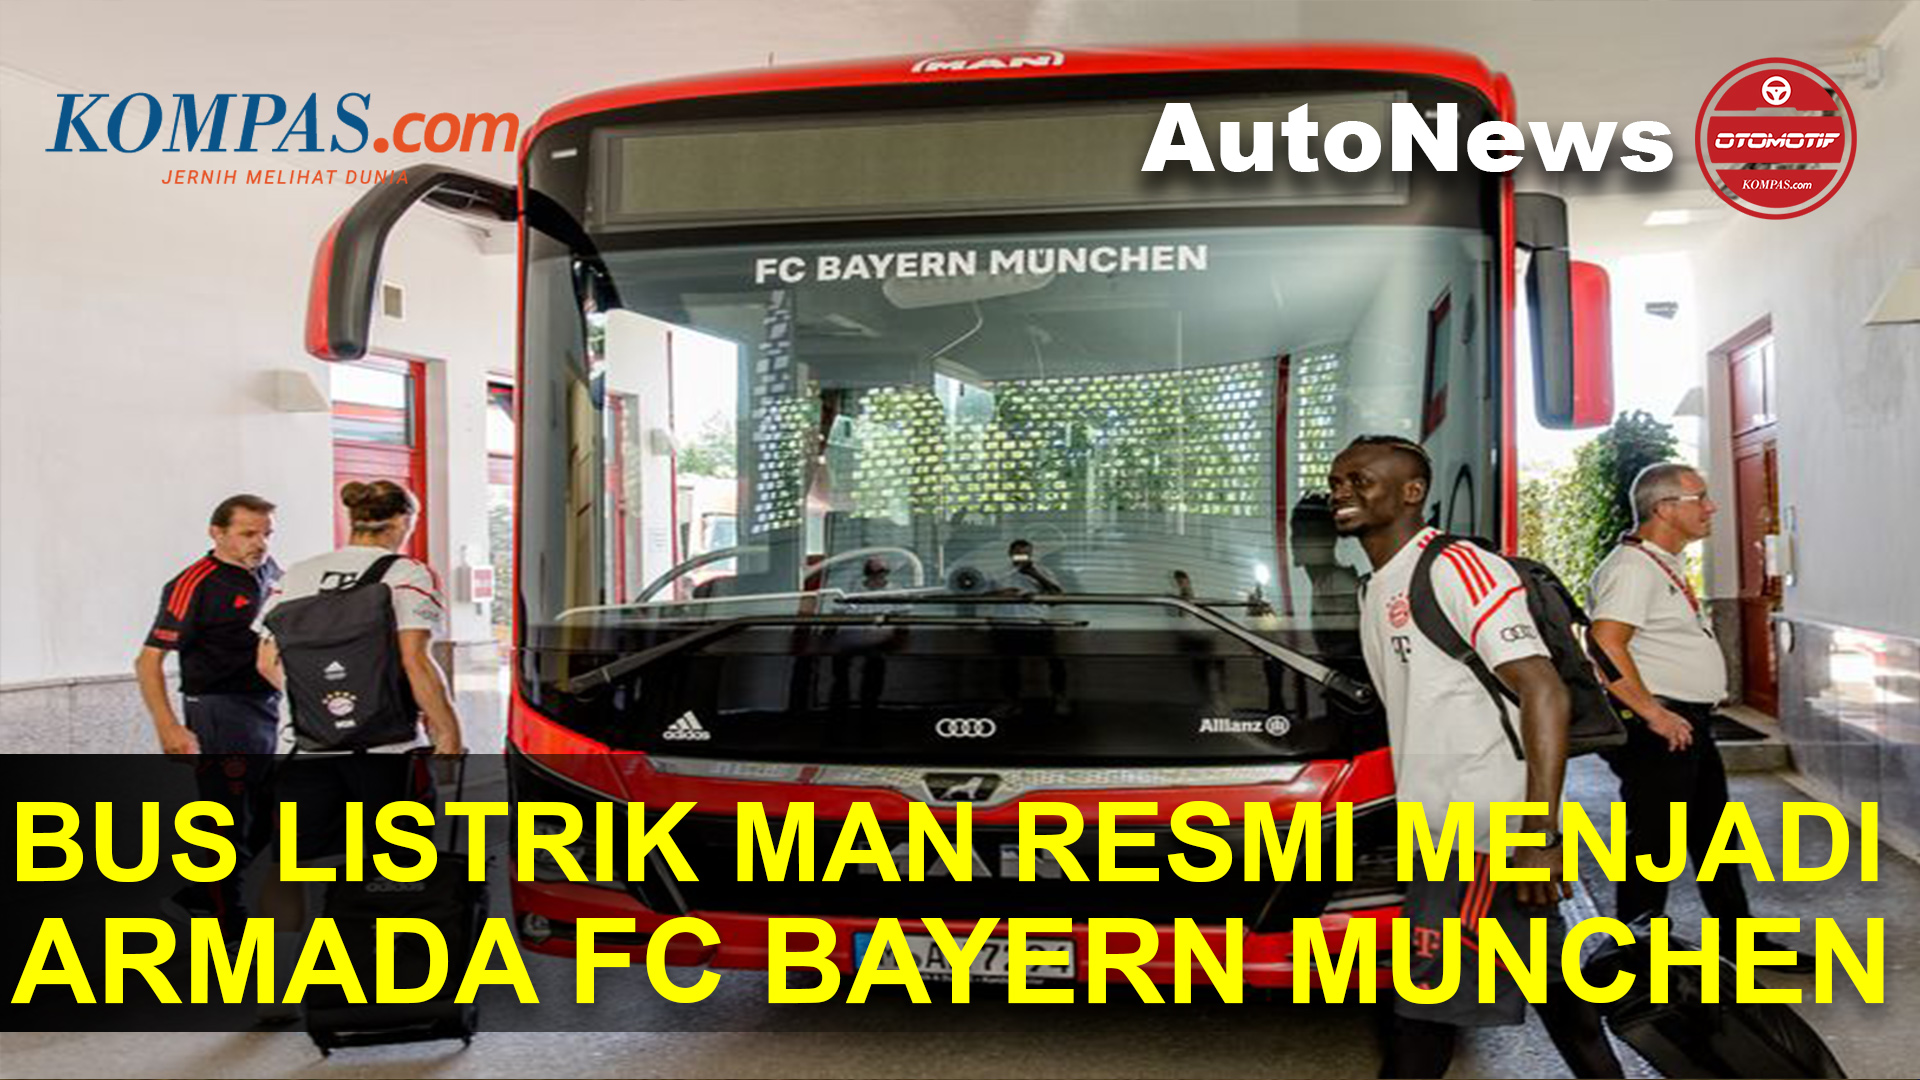 FC Bayern Munchen Pakai Bus Listrik MAN sebagai Armada Resmi